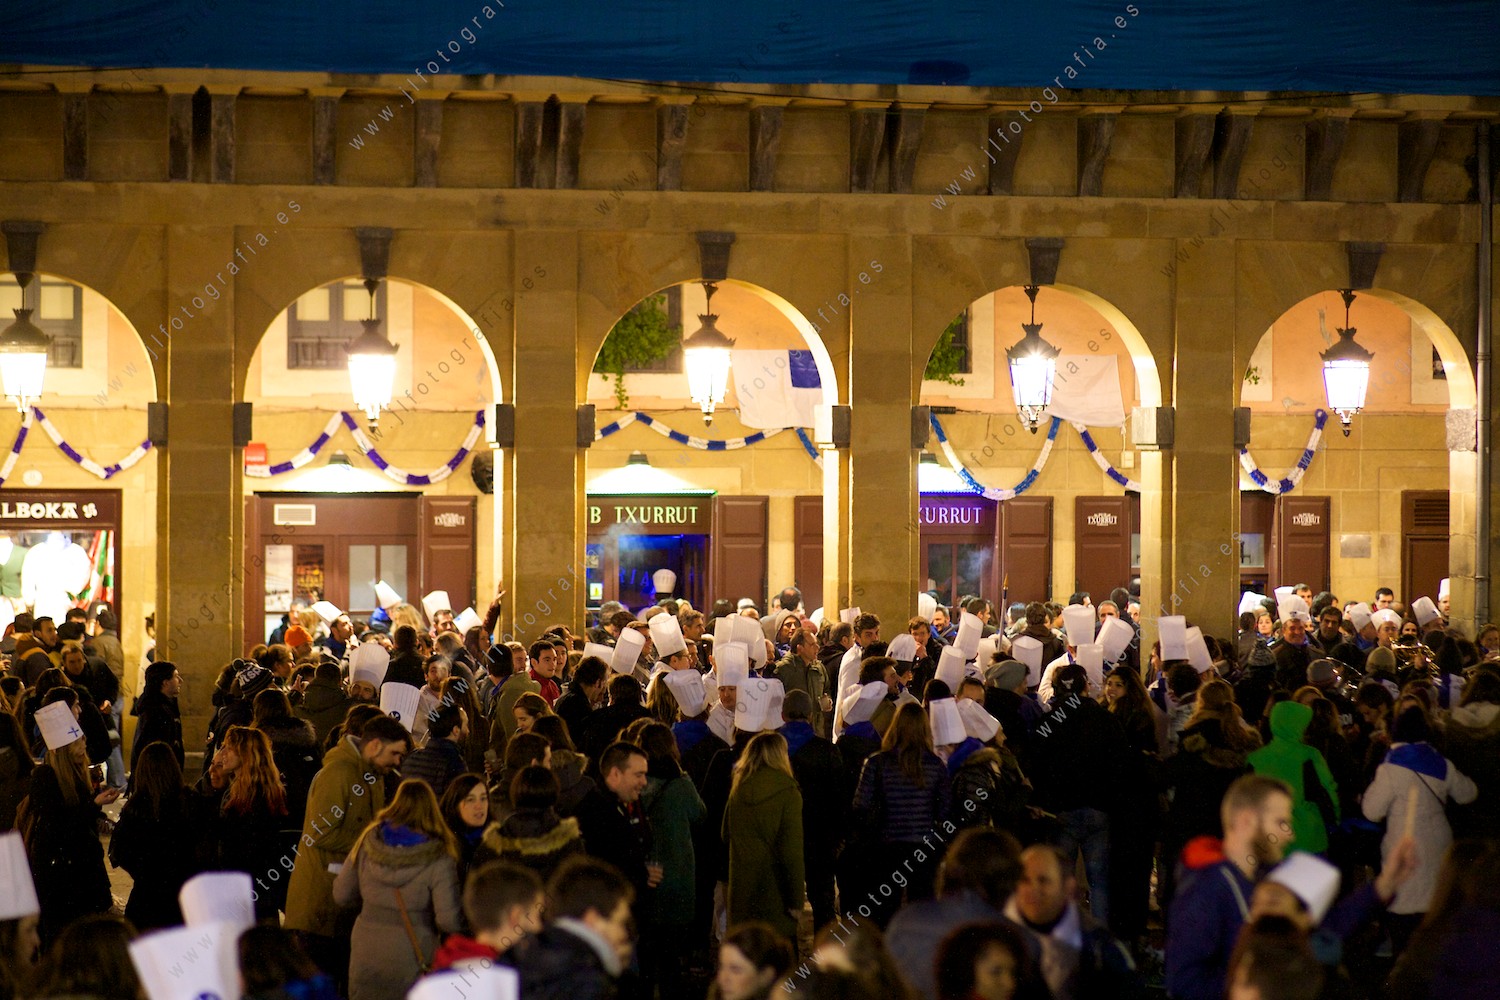 La plaza de la constitución de Donostia se llena toda la noche en la fiesta de la tamborrada .